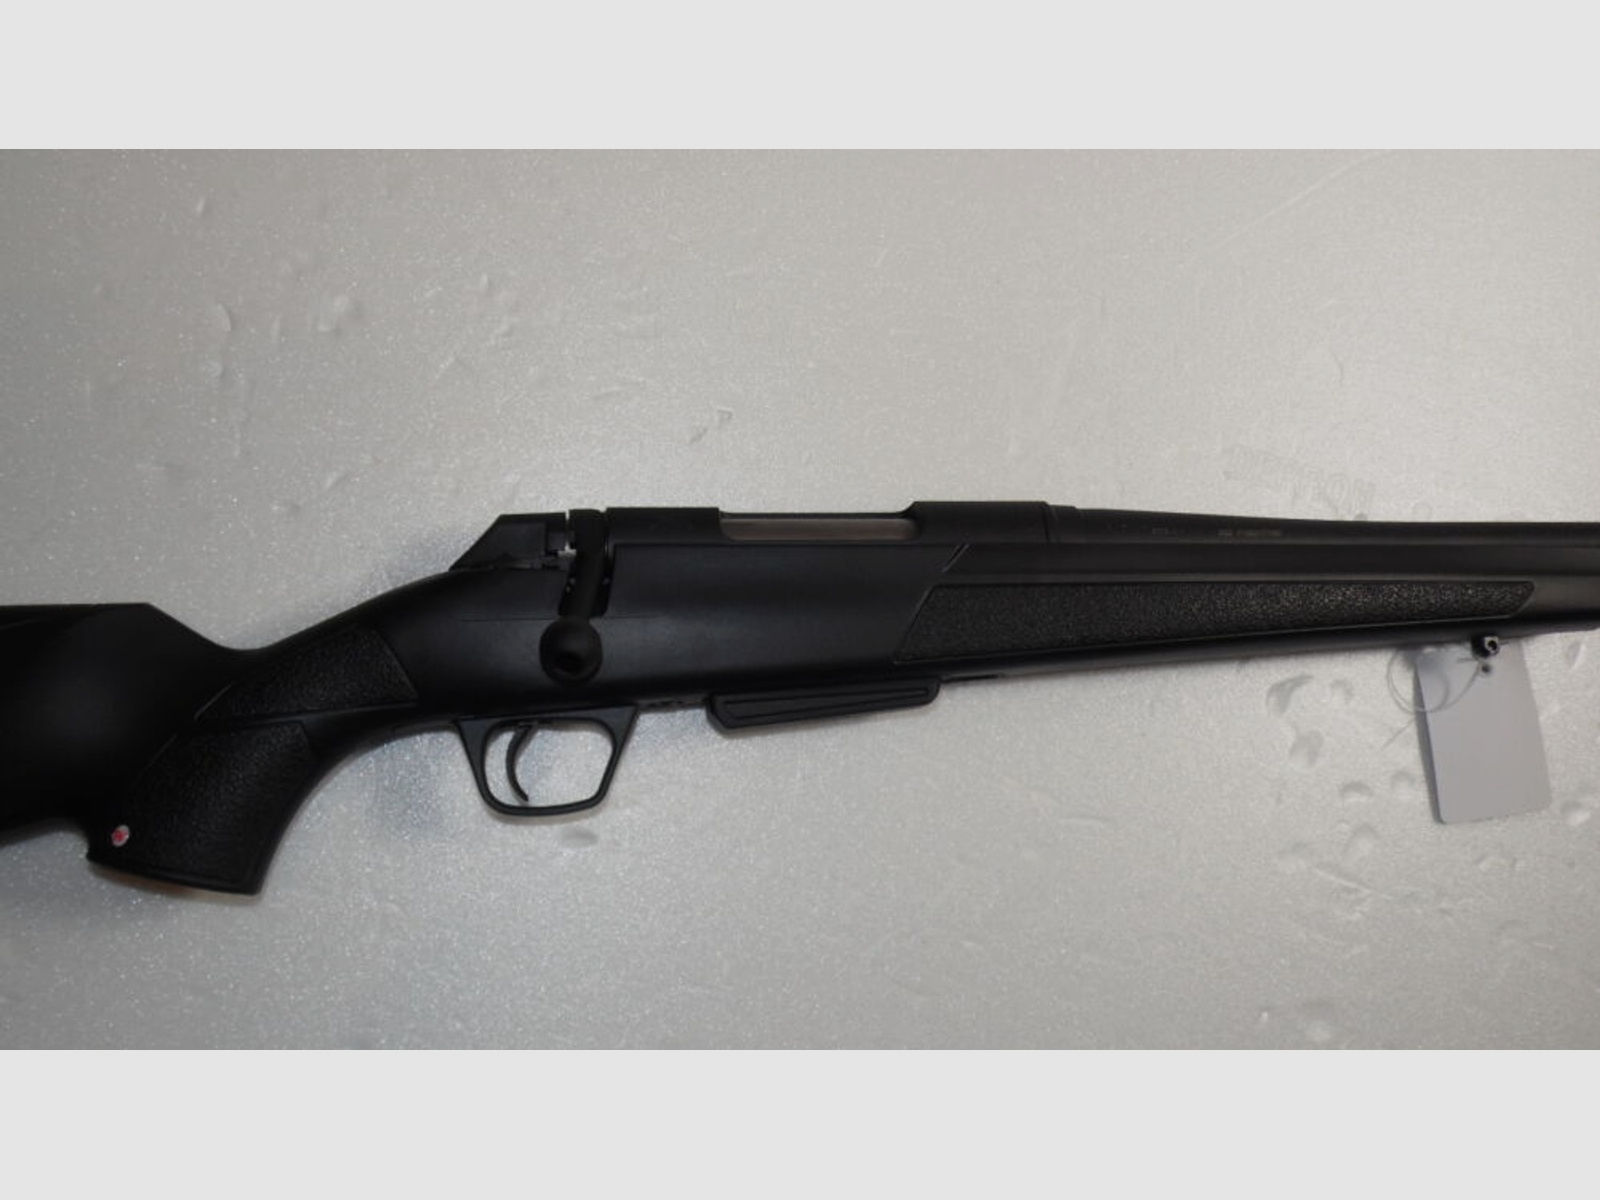 Winchester	 XPR Compo